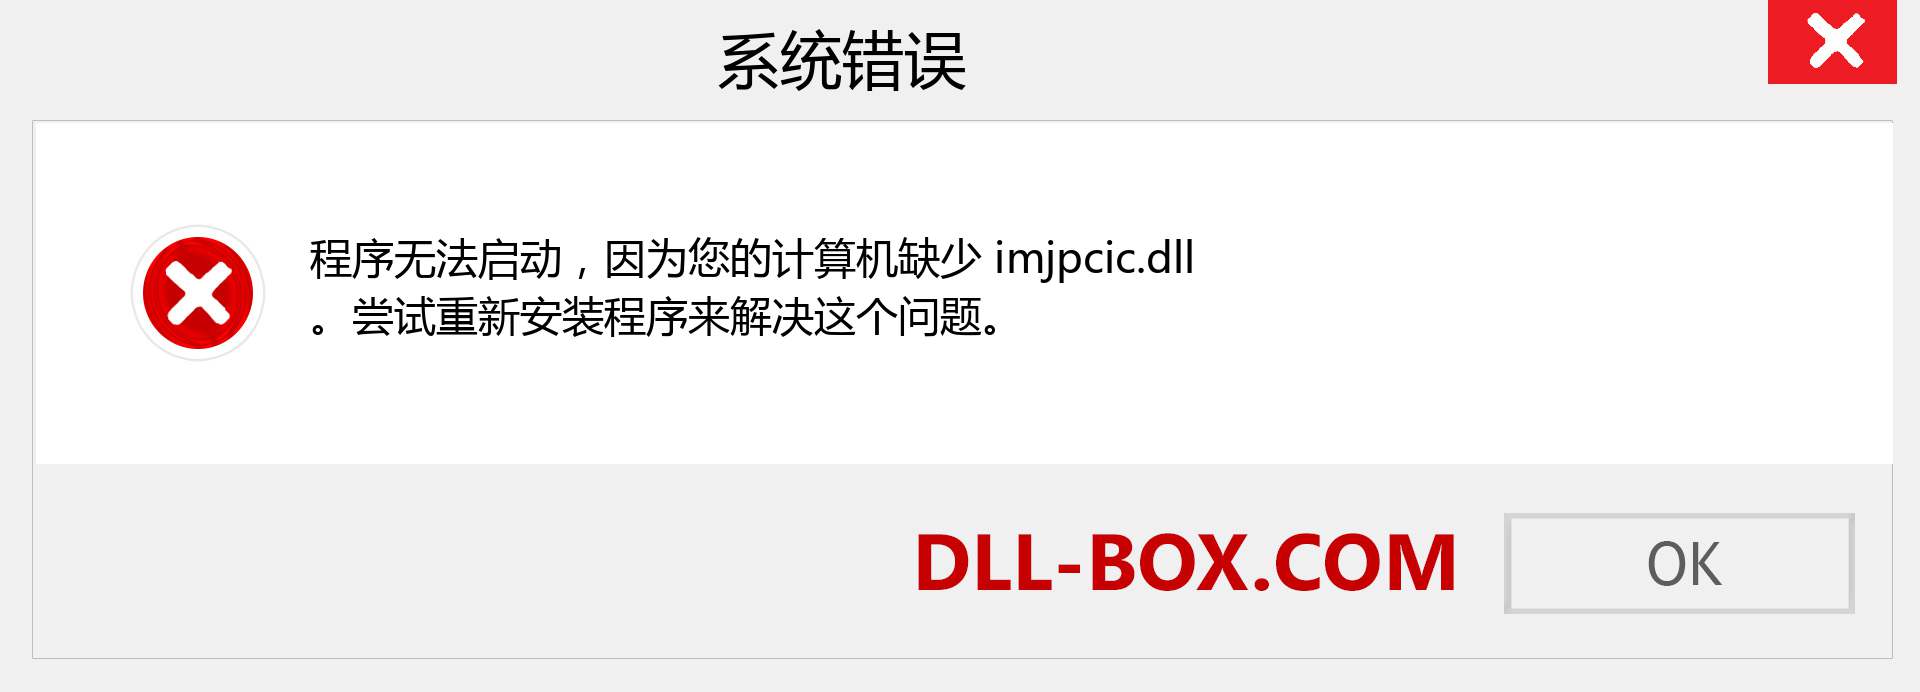 imjpcic.dll 文件丢失？。 适用于 Windows 7、8、10 的下载 - 修复 Windows、照片、图像上的 imjpcic dll 丢失错误